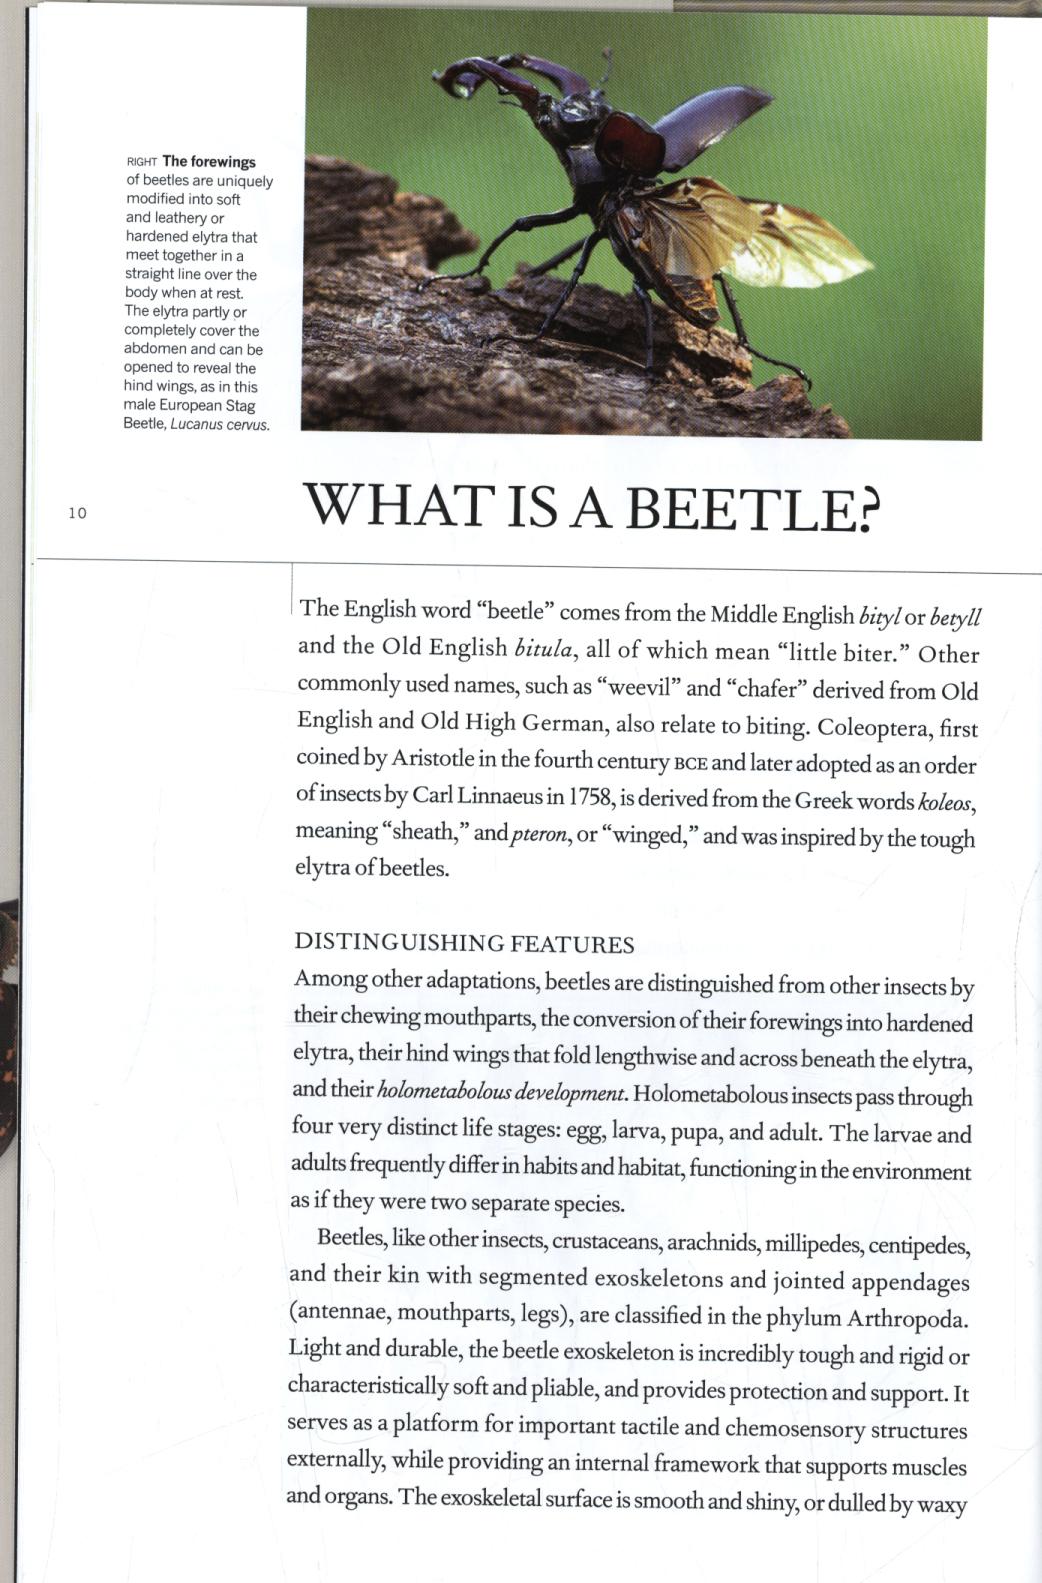 Book of Beetles